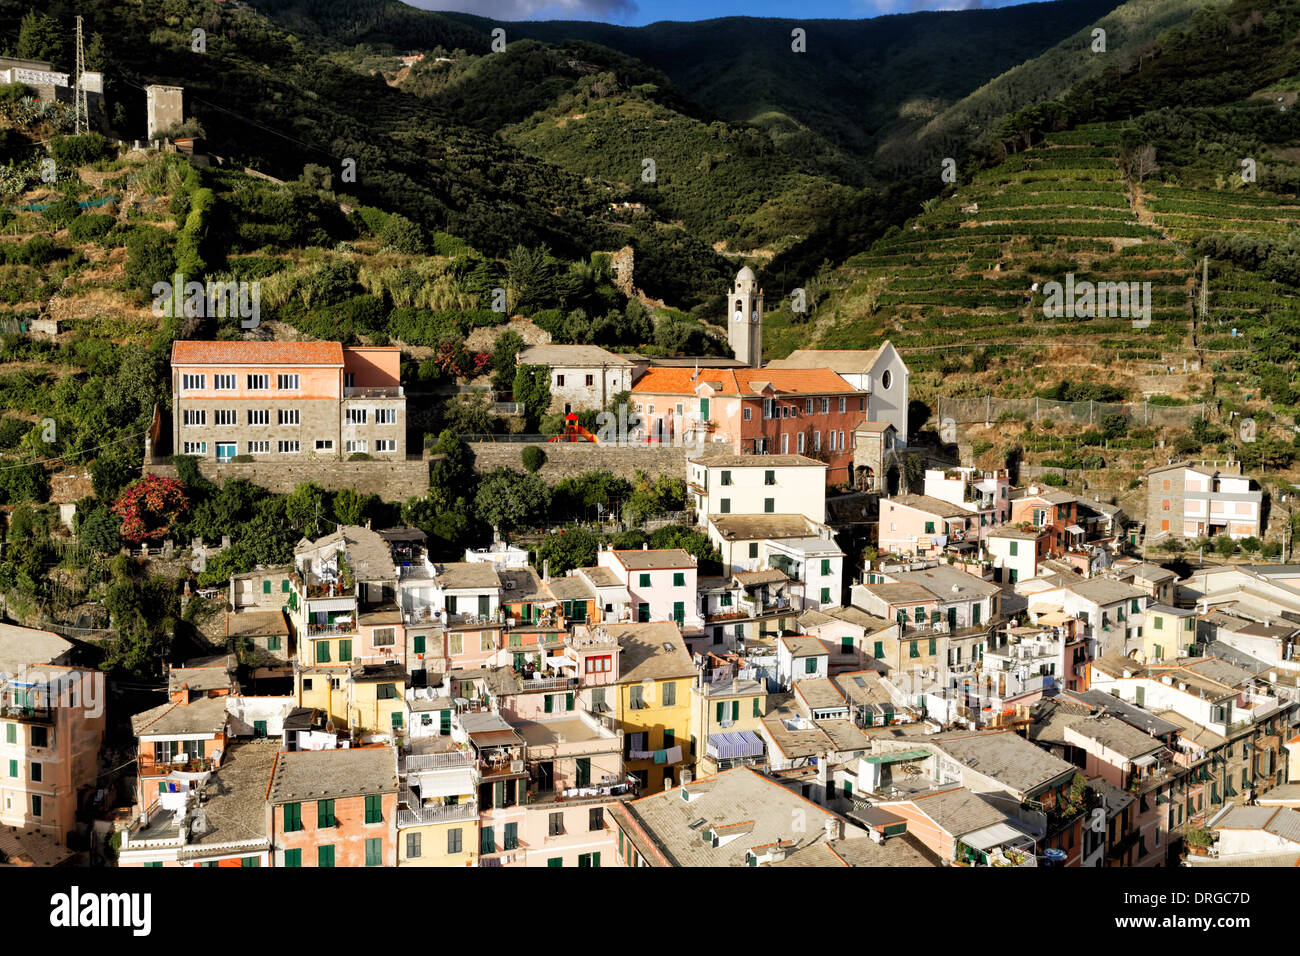 Portrait d'une petite ville sur les collines, Vernazza, Cinque Terre, ligurie, italie Banque D'Images